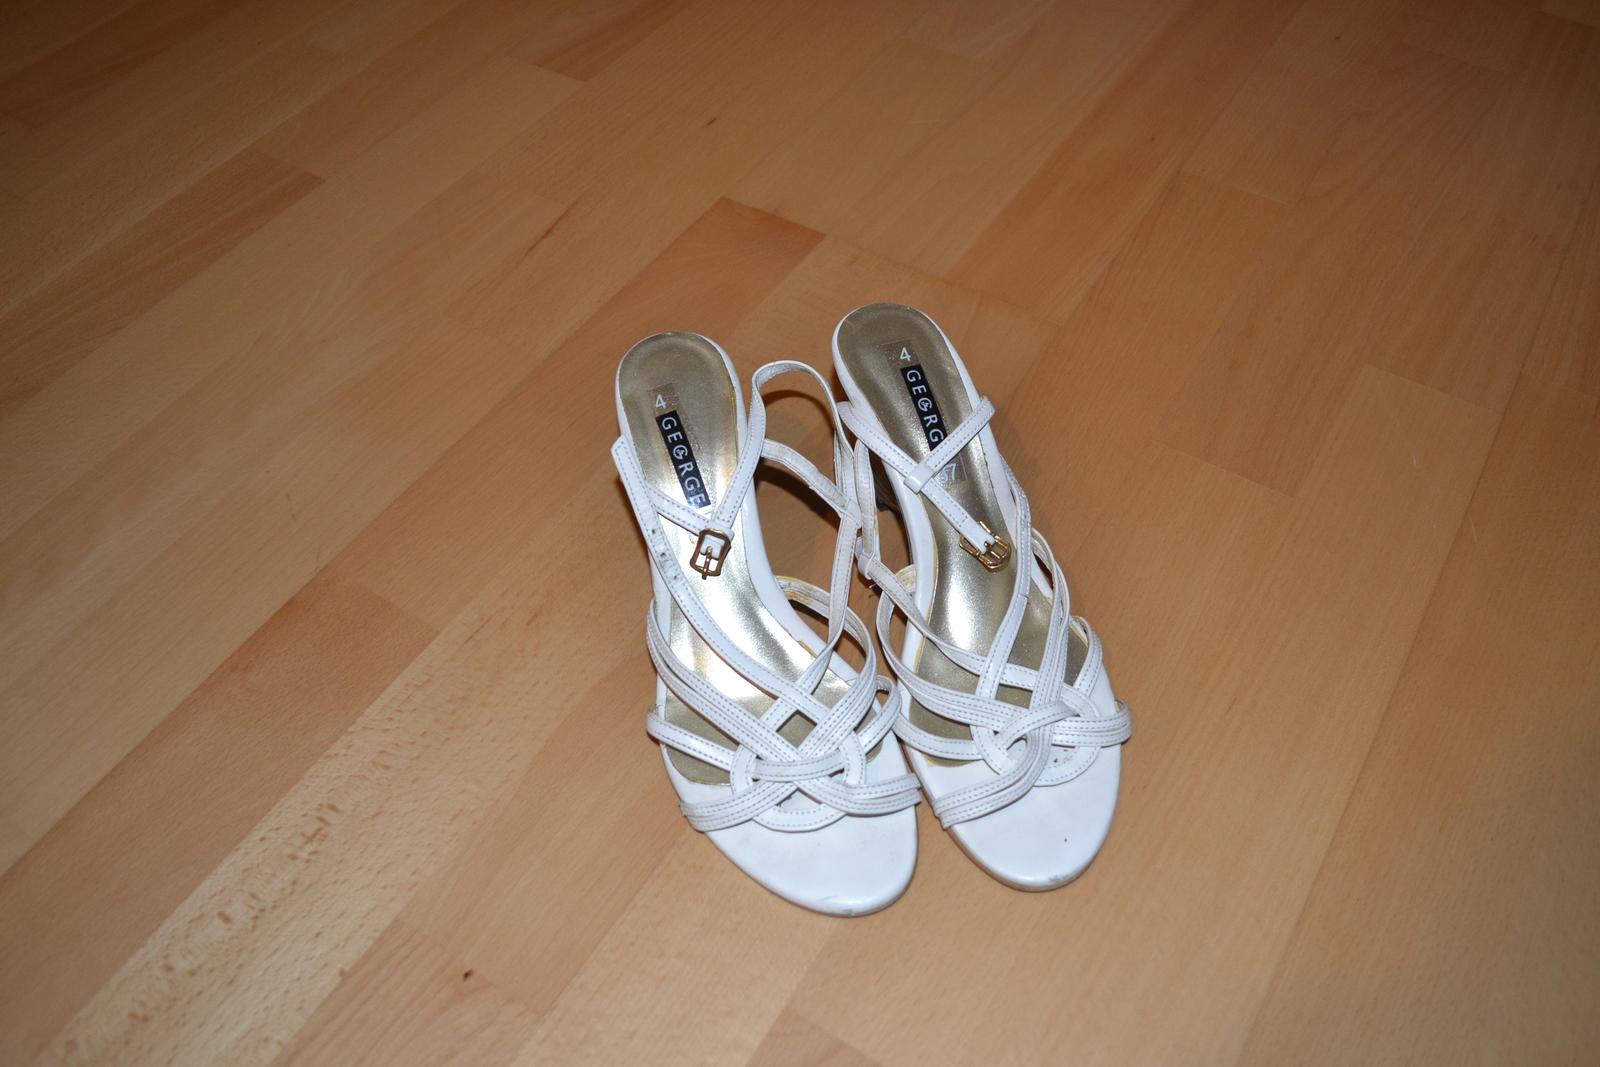 biele sandalky - Obrázok č. 1